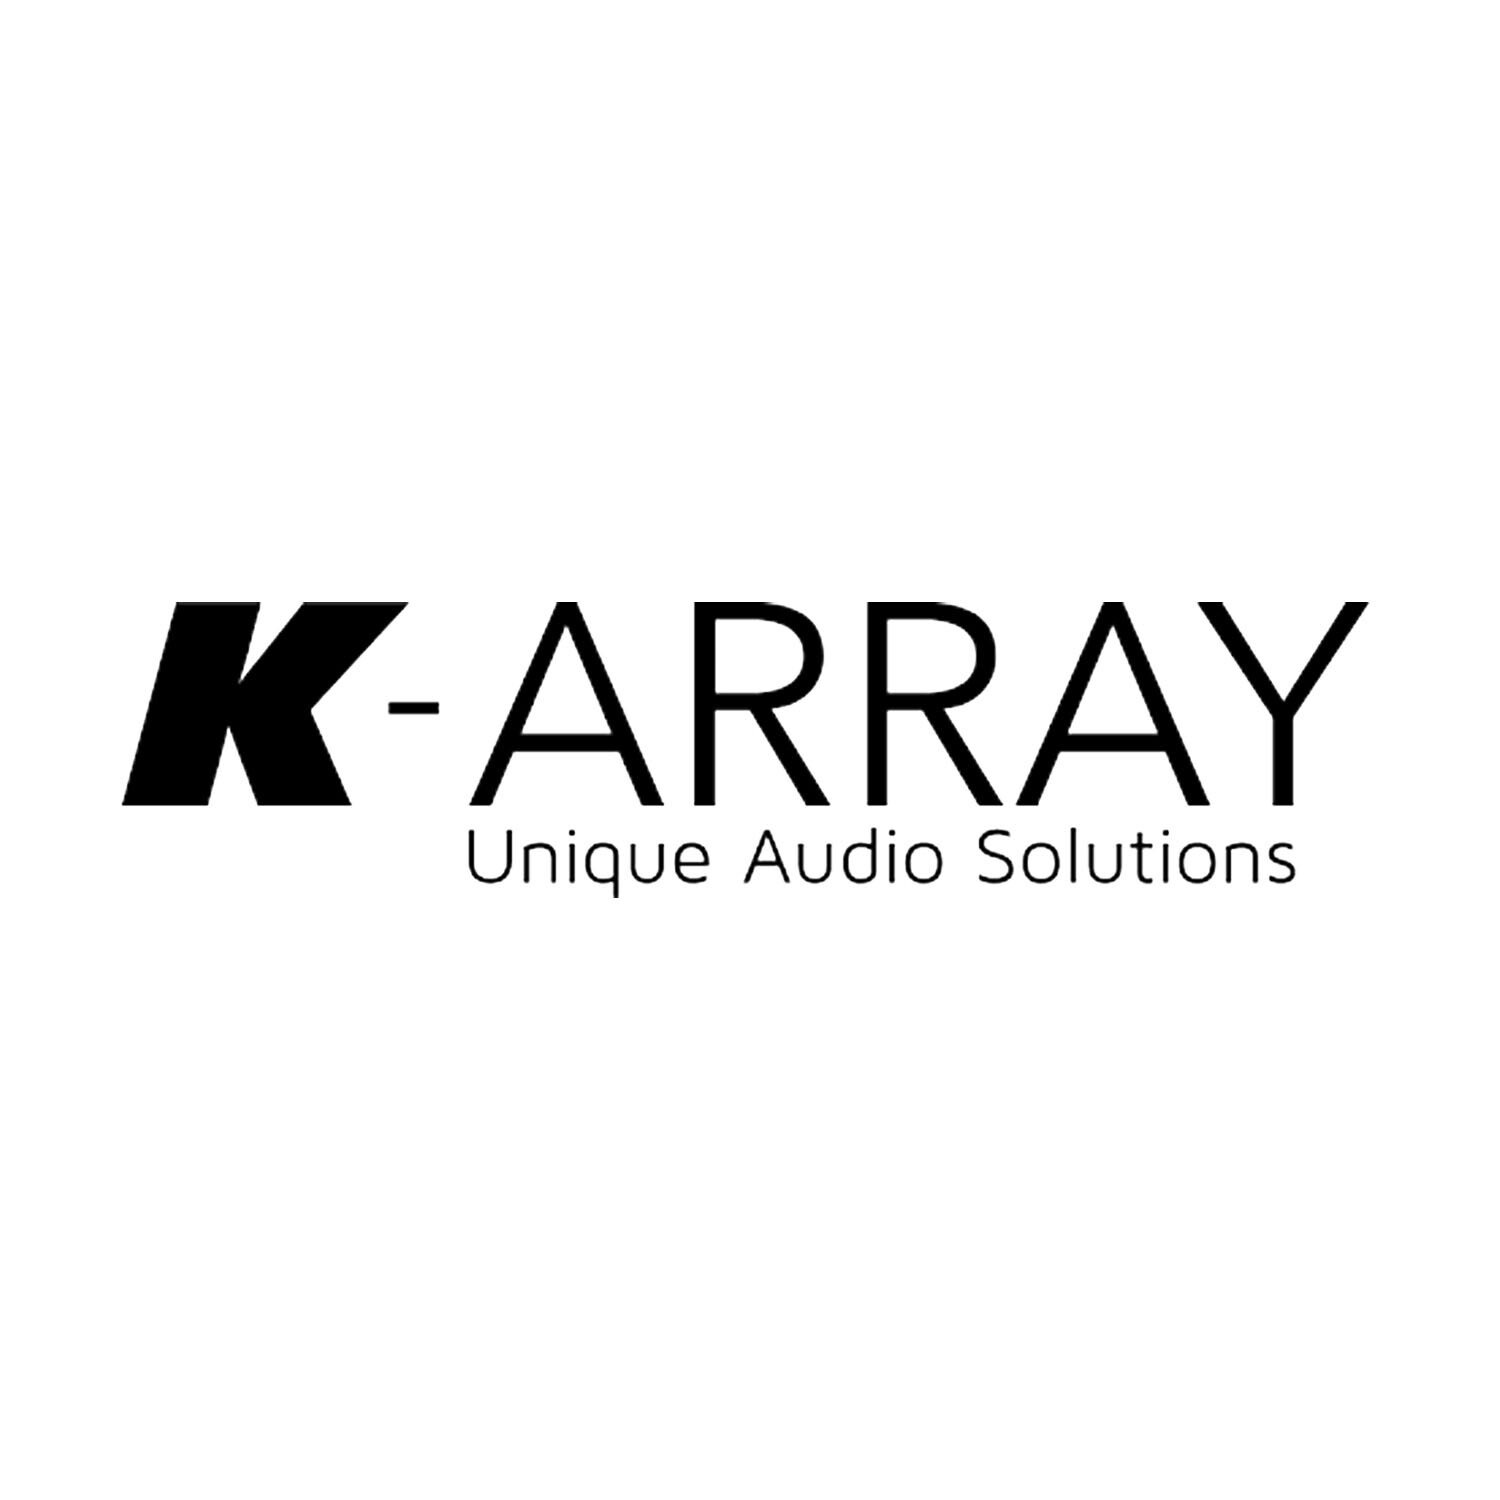 k-array